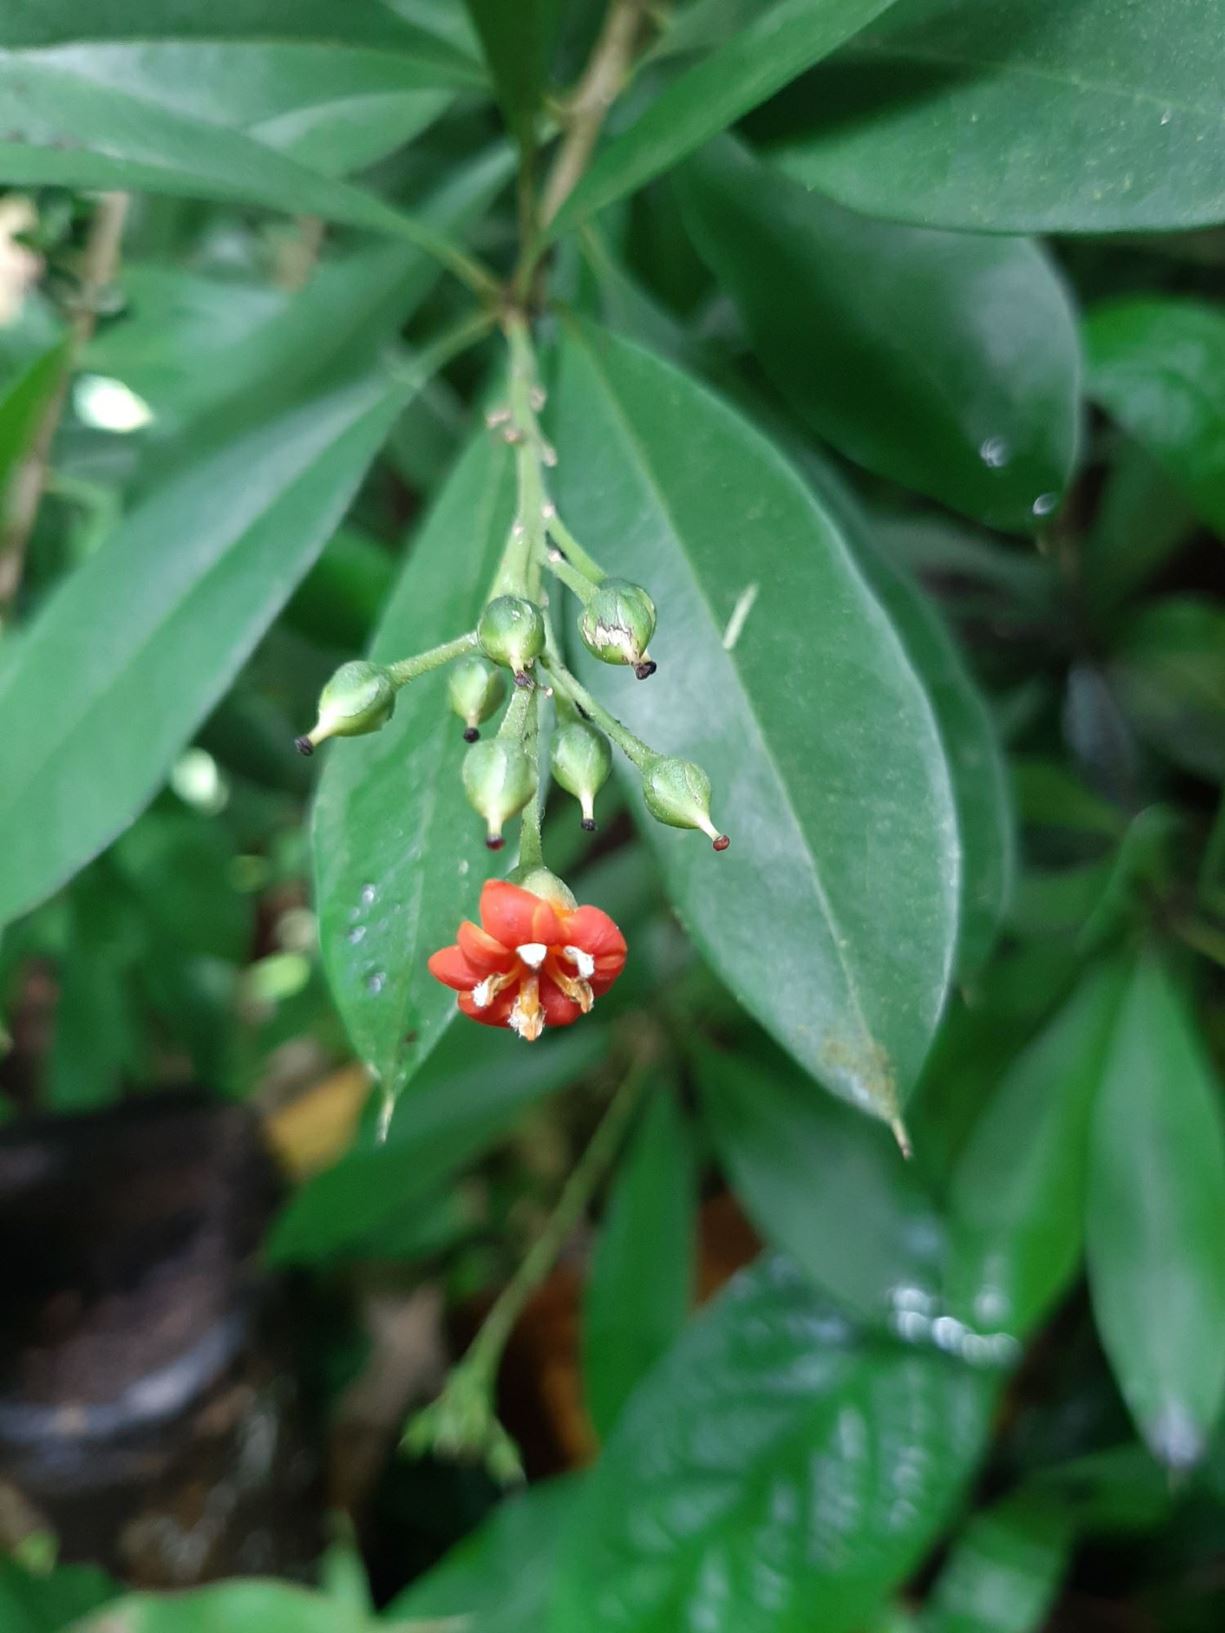 Bonellia macrocarpa subsp. pungens - Guayaca